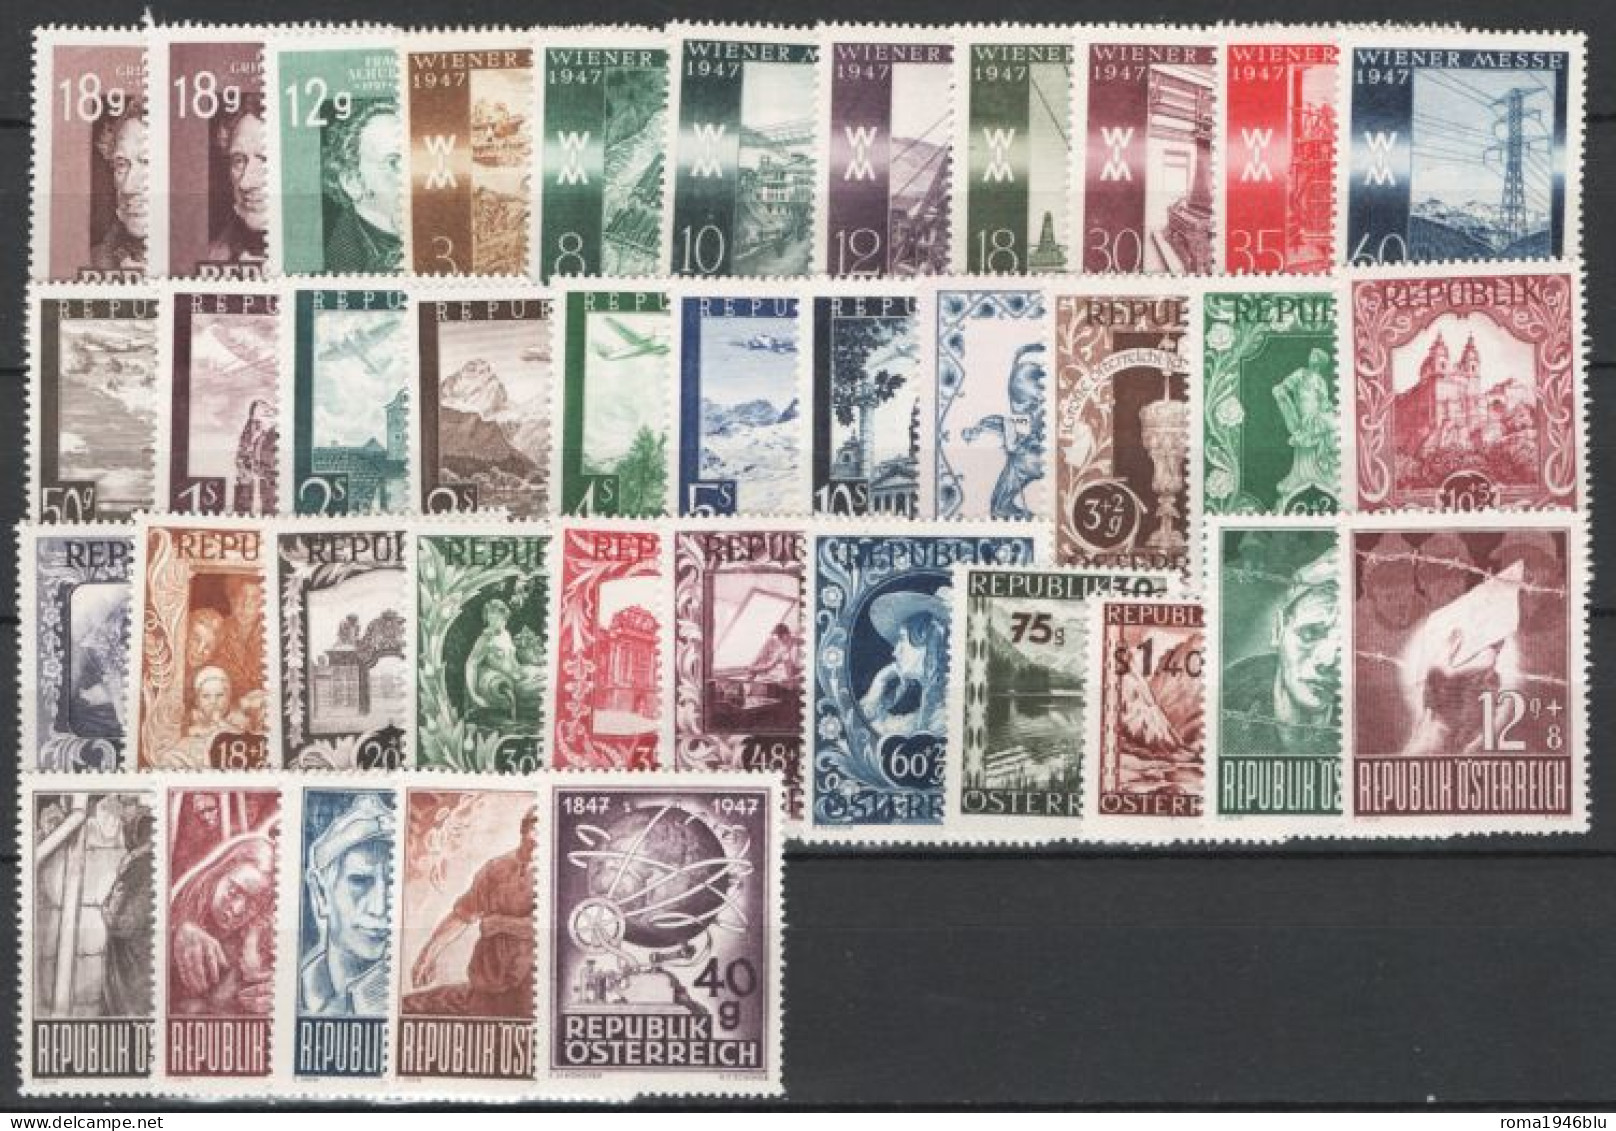 Austria 1947 Annata Completa Commemorativa  / Complete Commemorative Year Set **/MNH VF - Ganze Jahrgänge